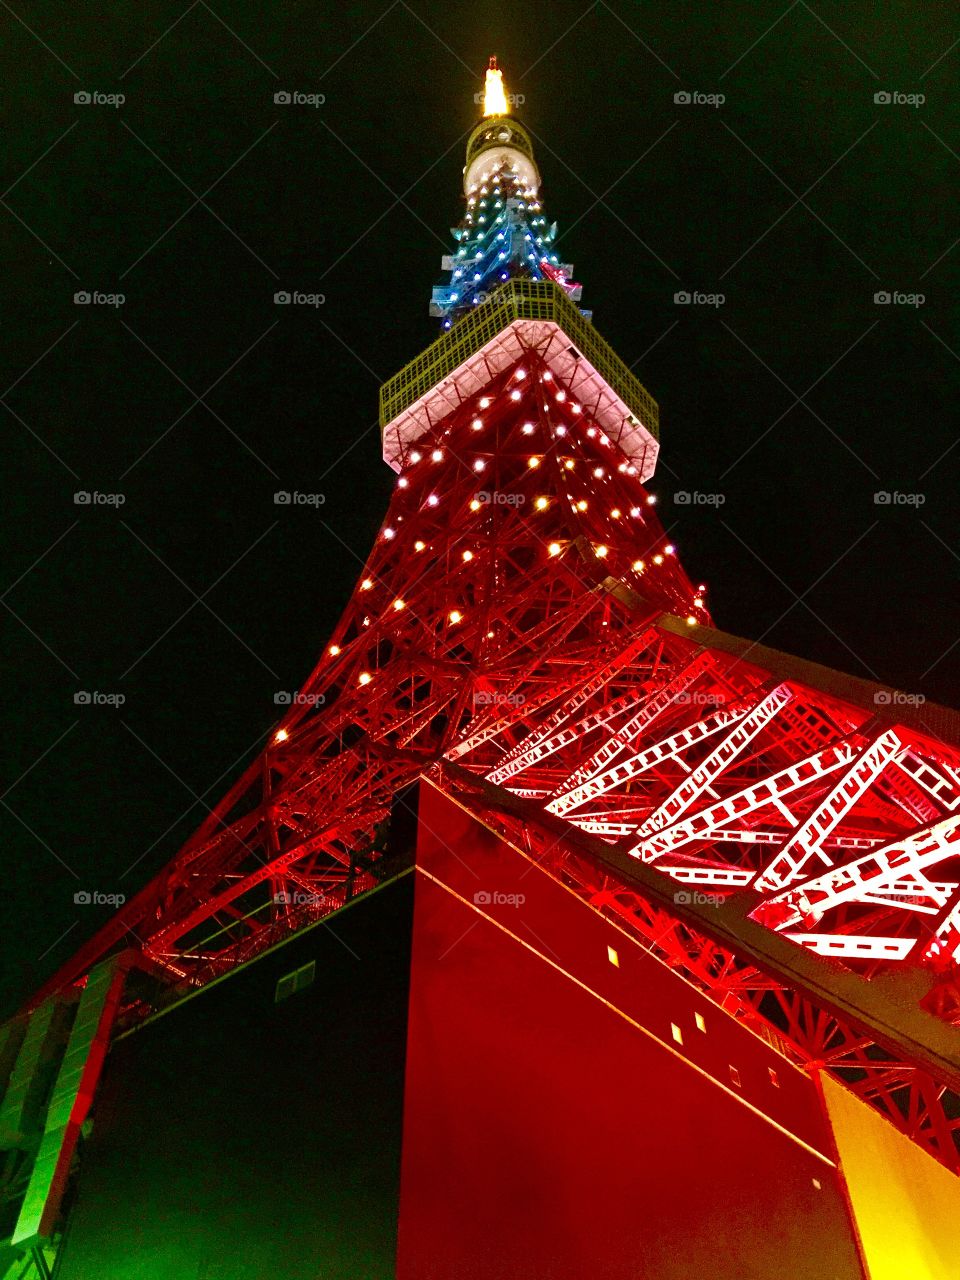 Tokyo Tower at night 